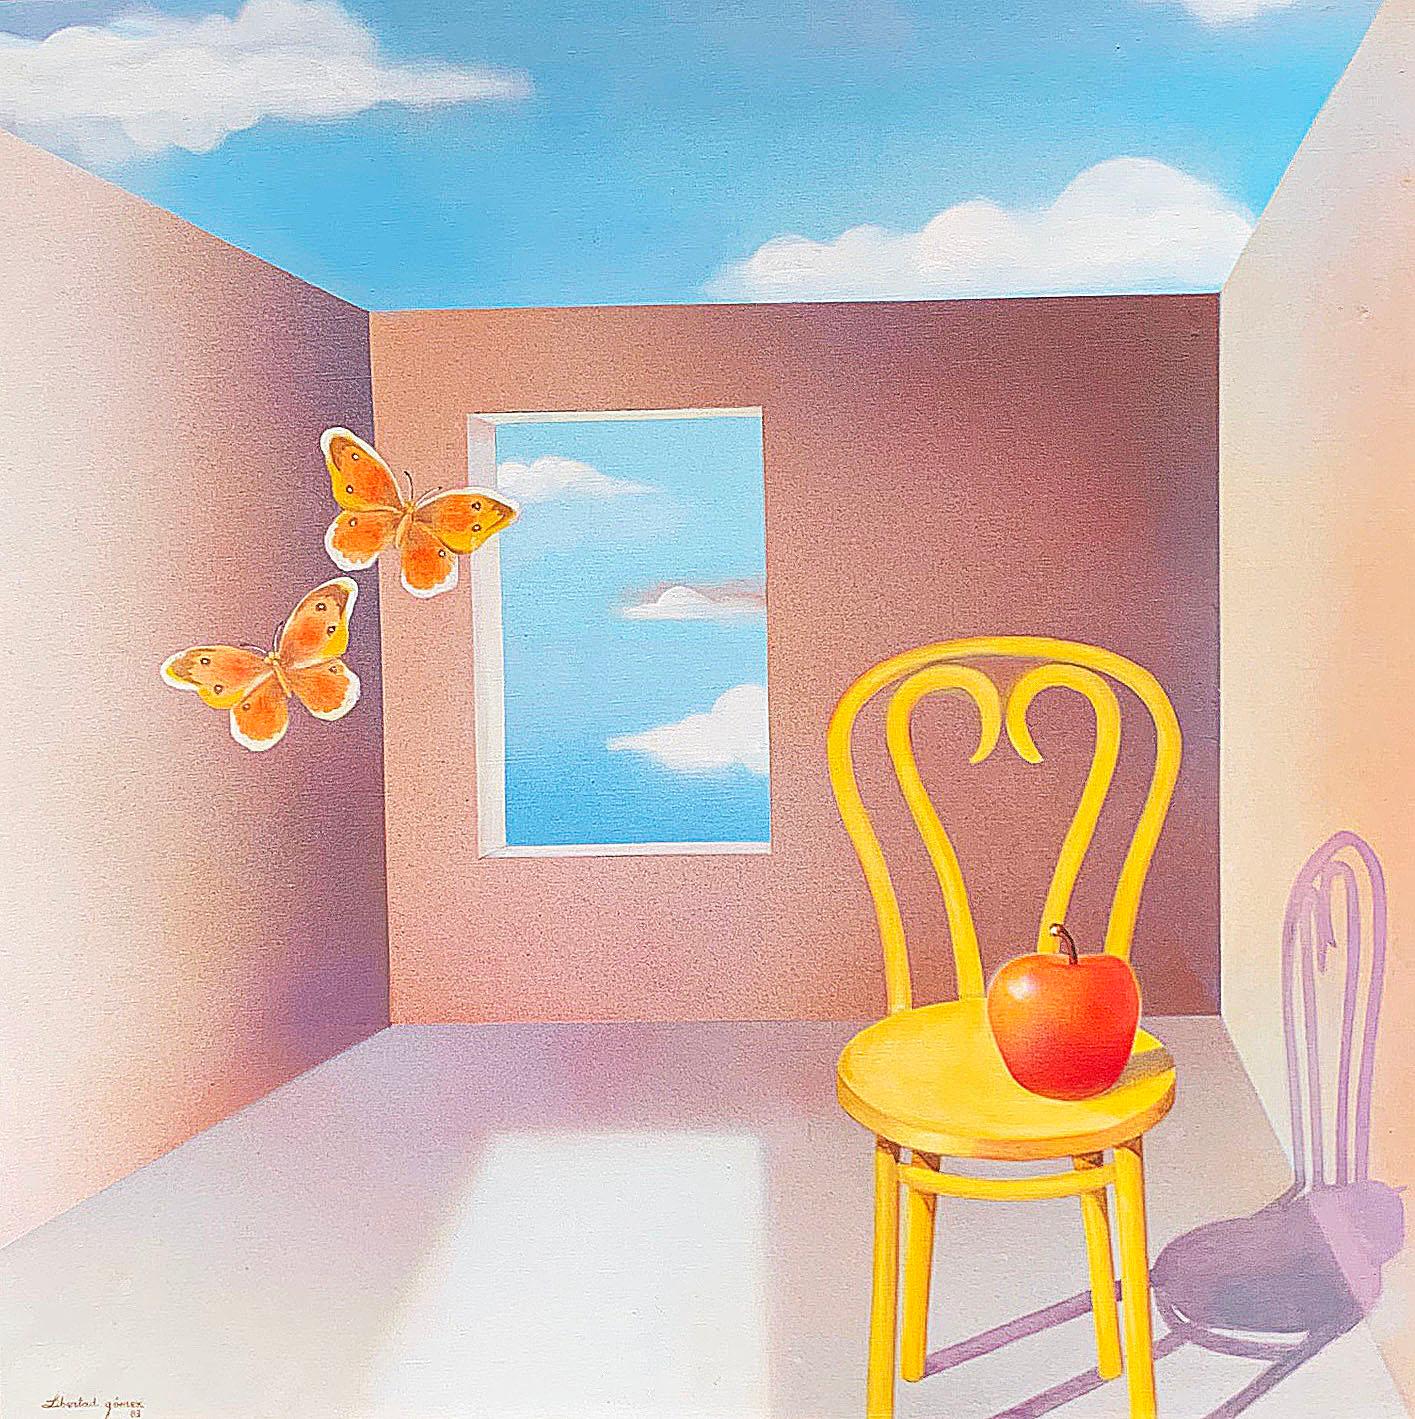 Cette peinture de Libertad Gomez, 1983 est une bouffée d'air frais. Nous aimons l'utilisation des couleurs et le rendu de l'artiste d'un environnement extérieur. Le cadre est en argent et présente une certaine décoloration à certains endroits, comme